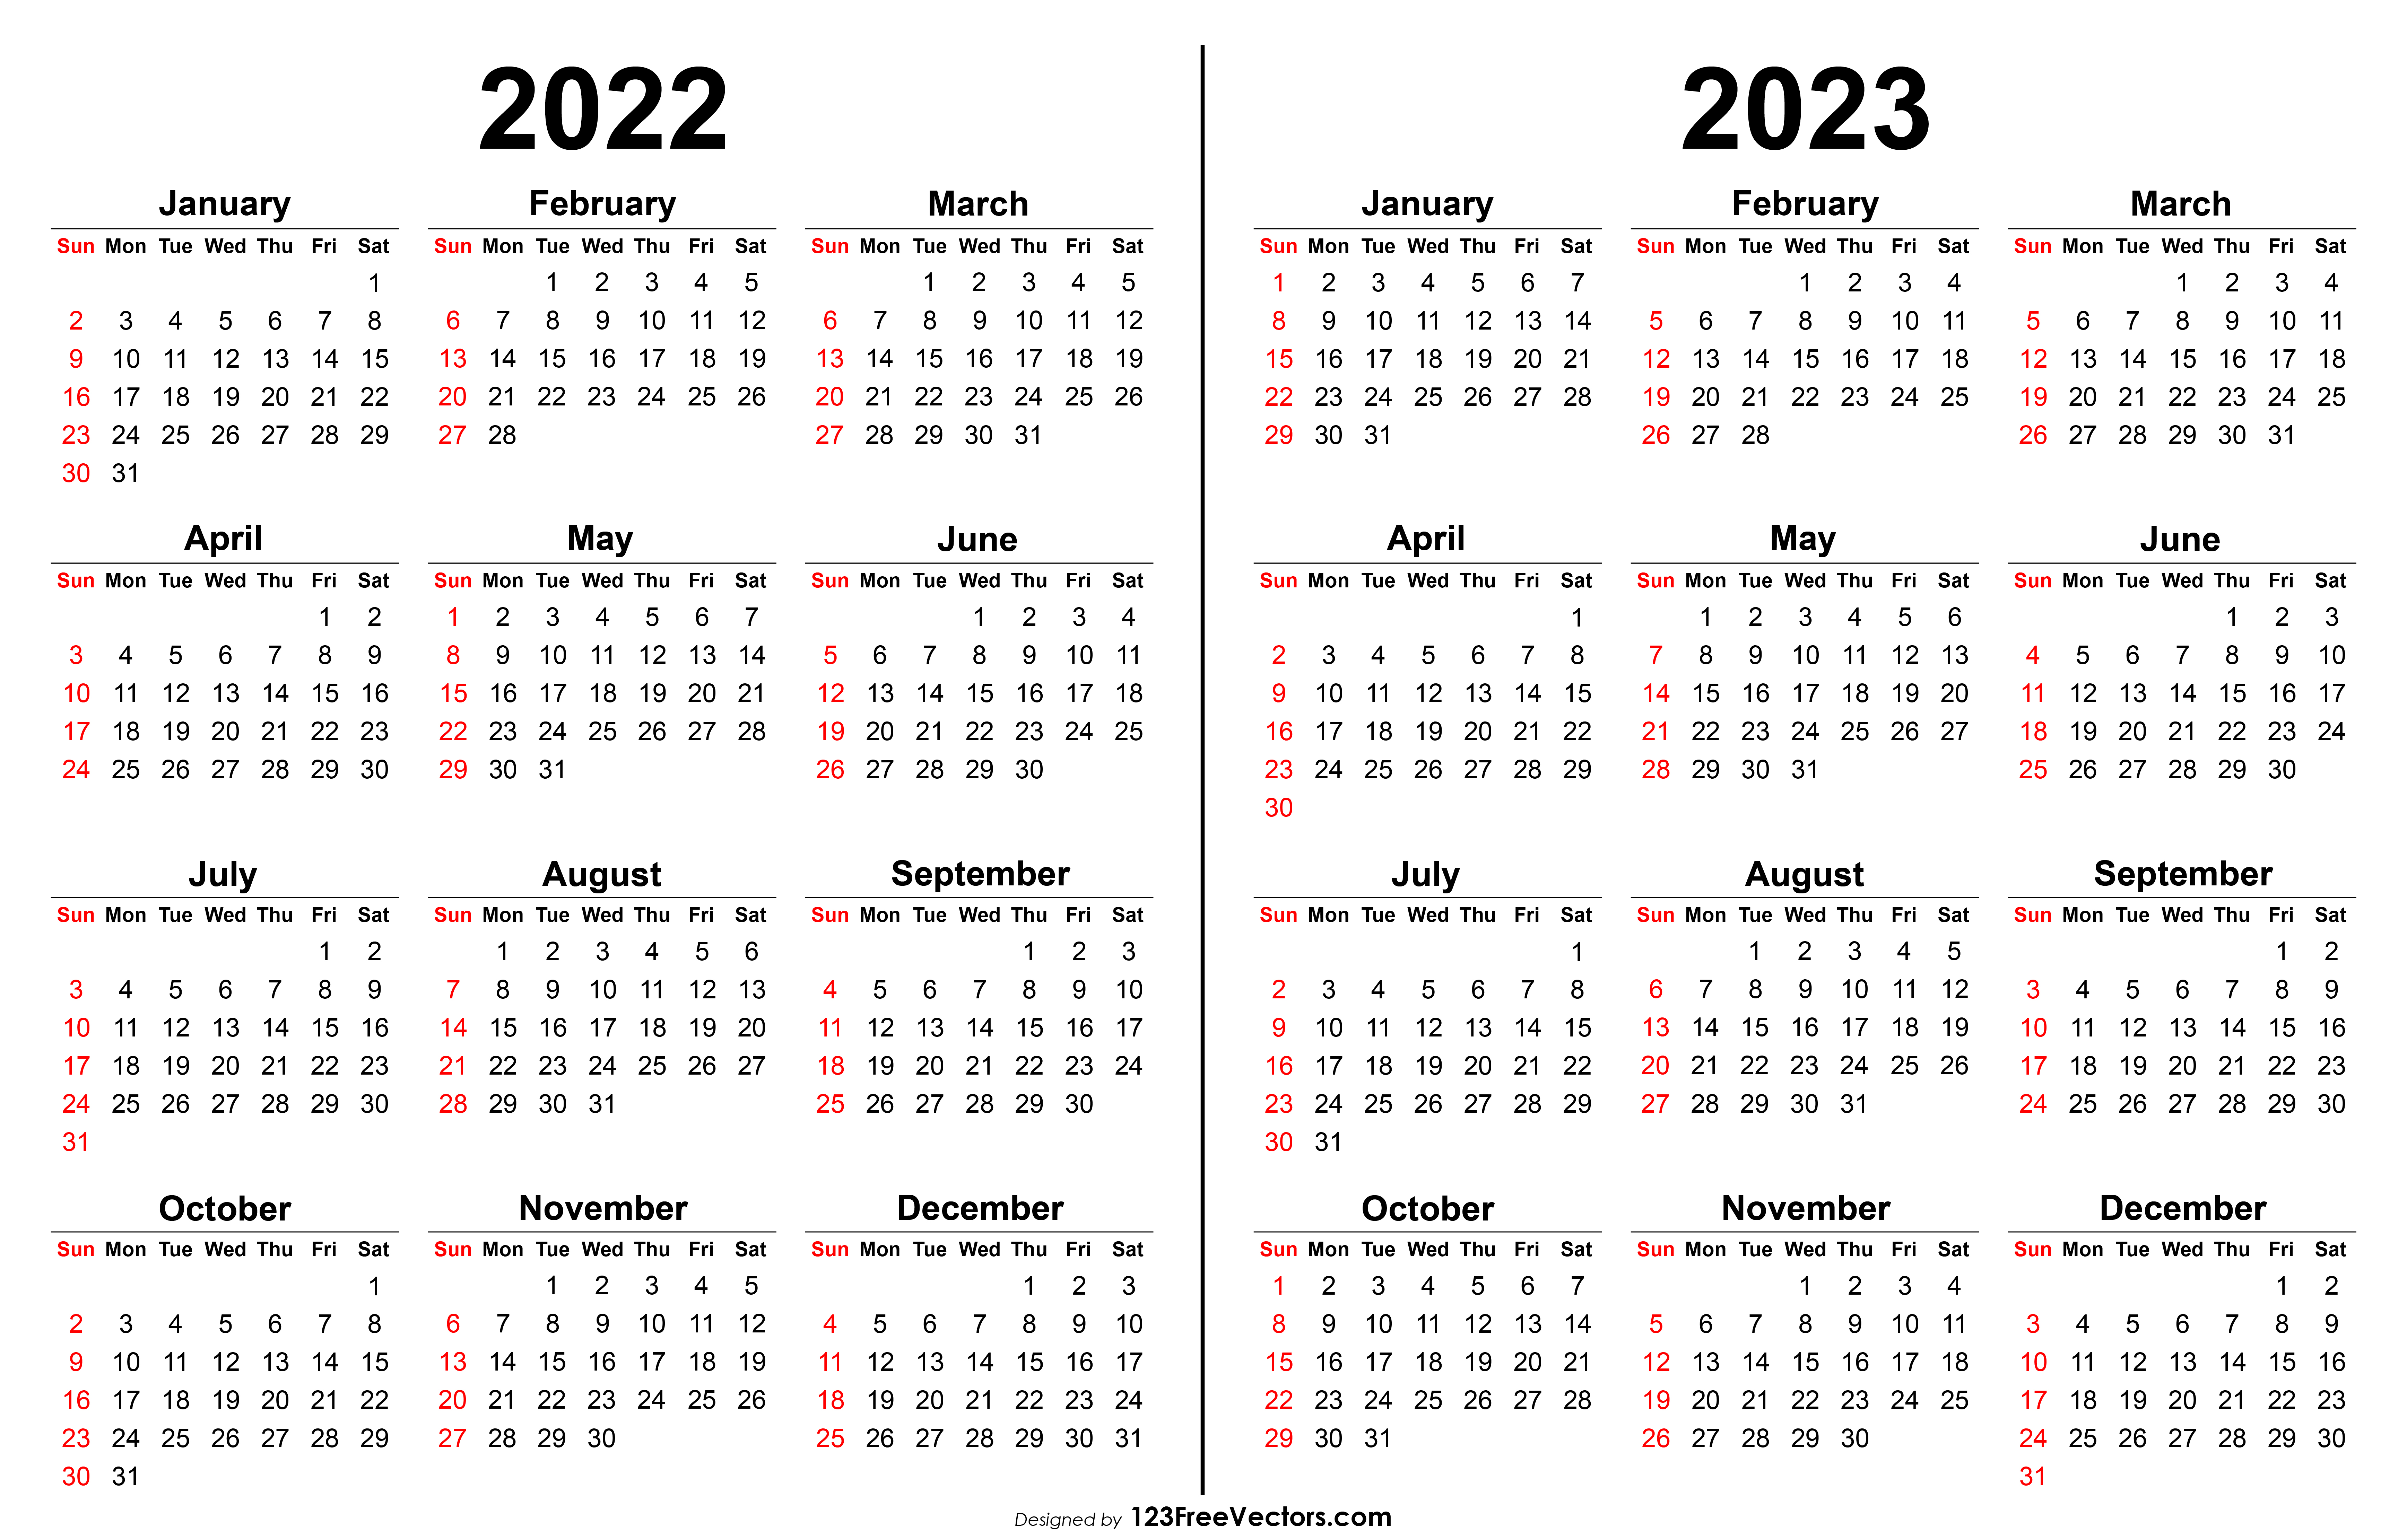 Free Calendar 2022 2023 Free 2022 2023 Calendar